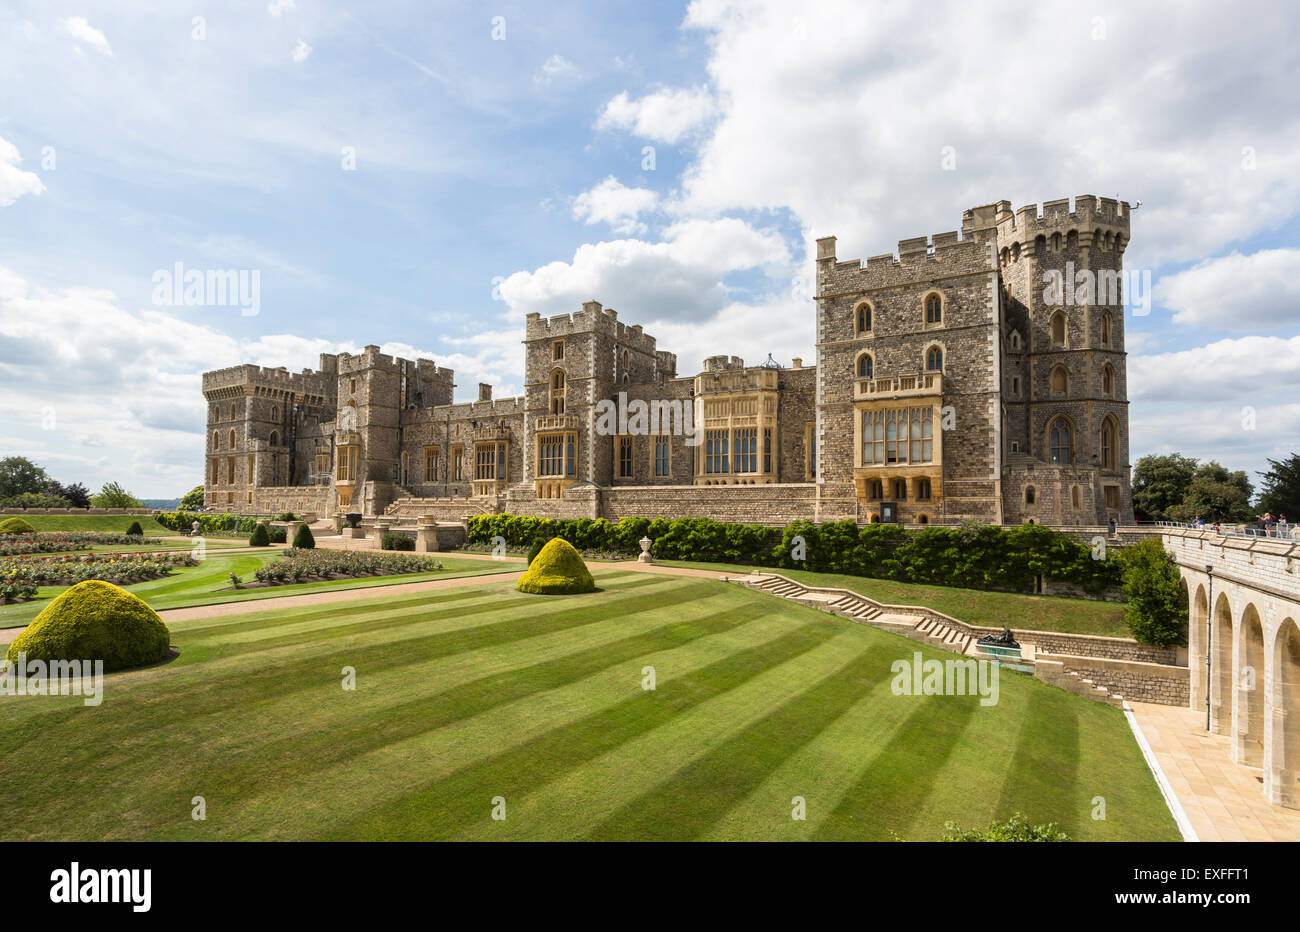 Royal English sightseeing: Vista del Castello di Windsor in Inghilterra, con prati e giardini, Principe di Galles la torre e la torre di Brunswick, su una soleggiata giornata estiva Foto Stock